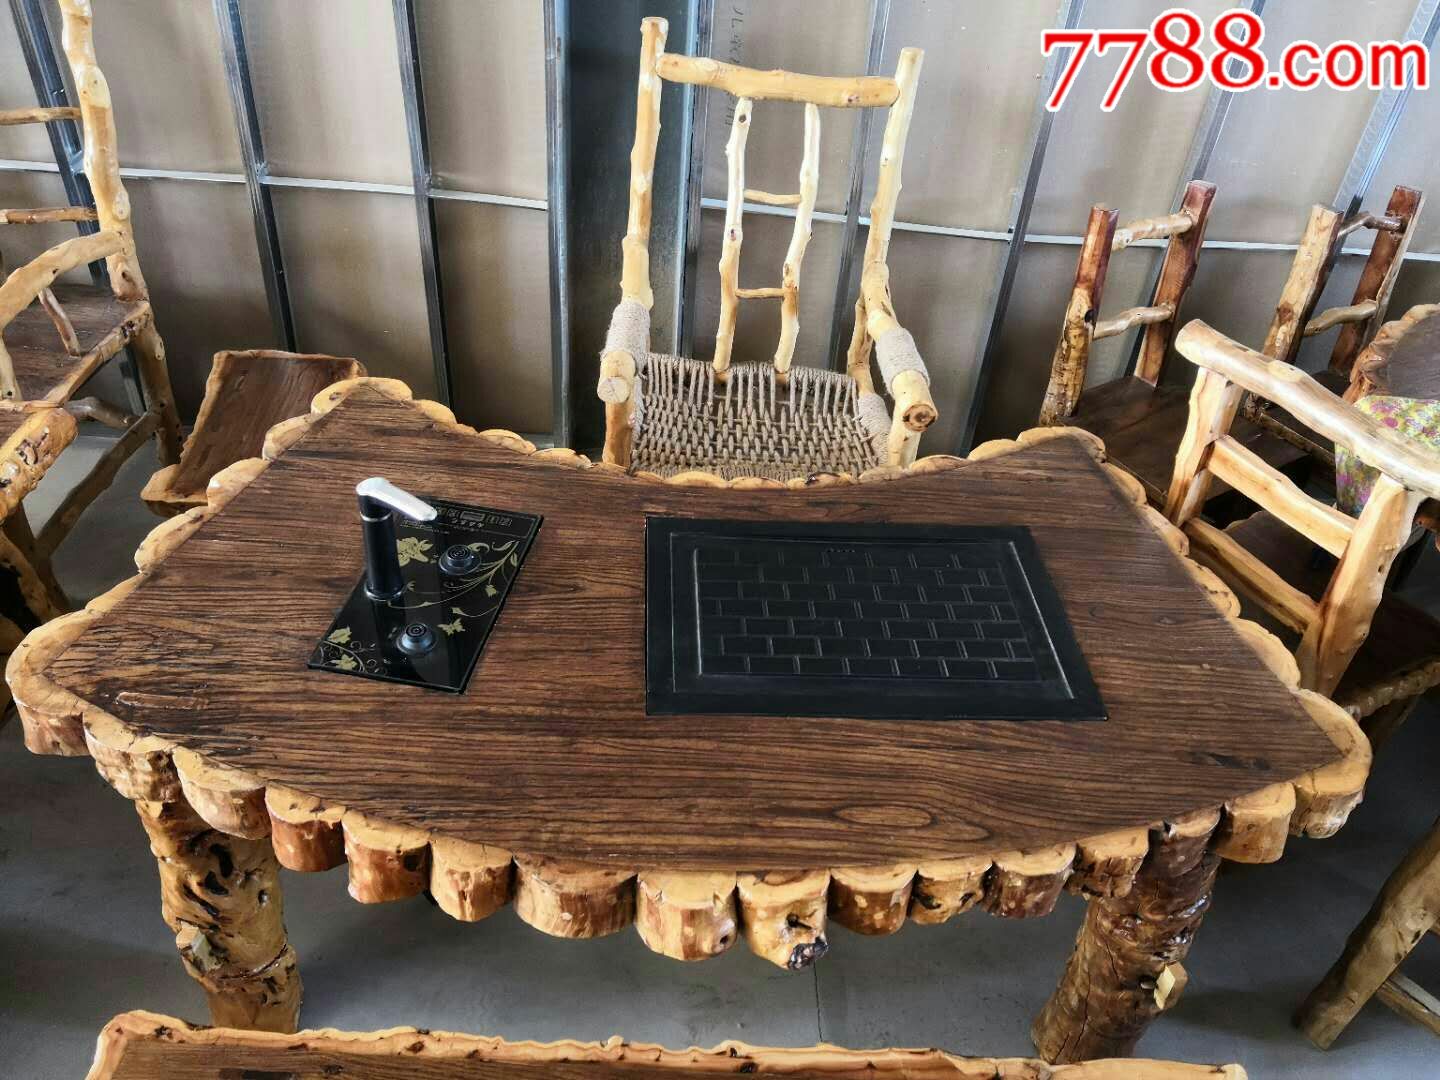 枣木扇形茶桌五件套,一桌一主椅两短凳一长凳,款式新颖,造型独特